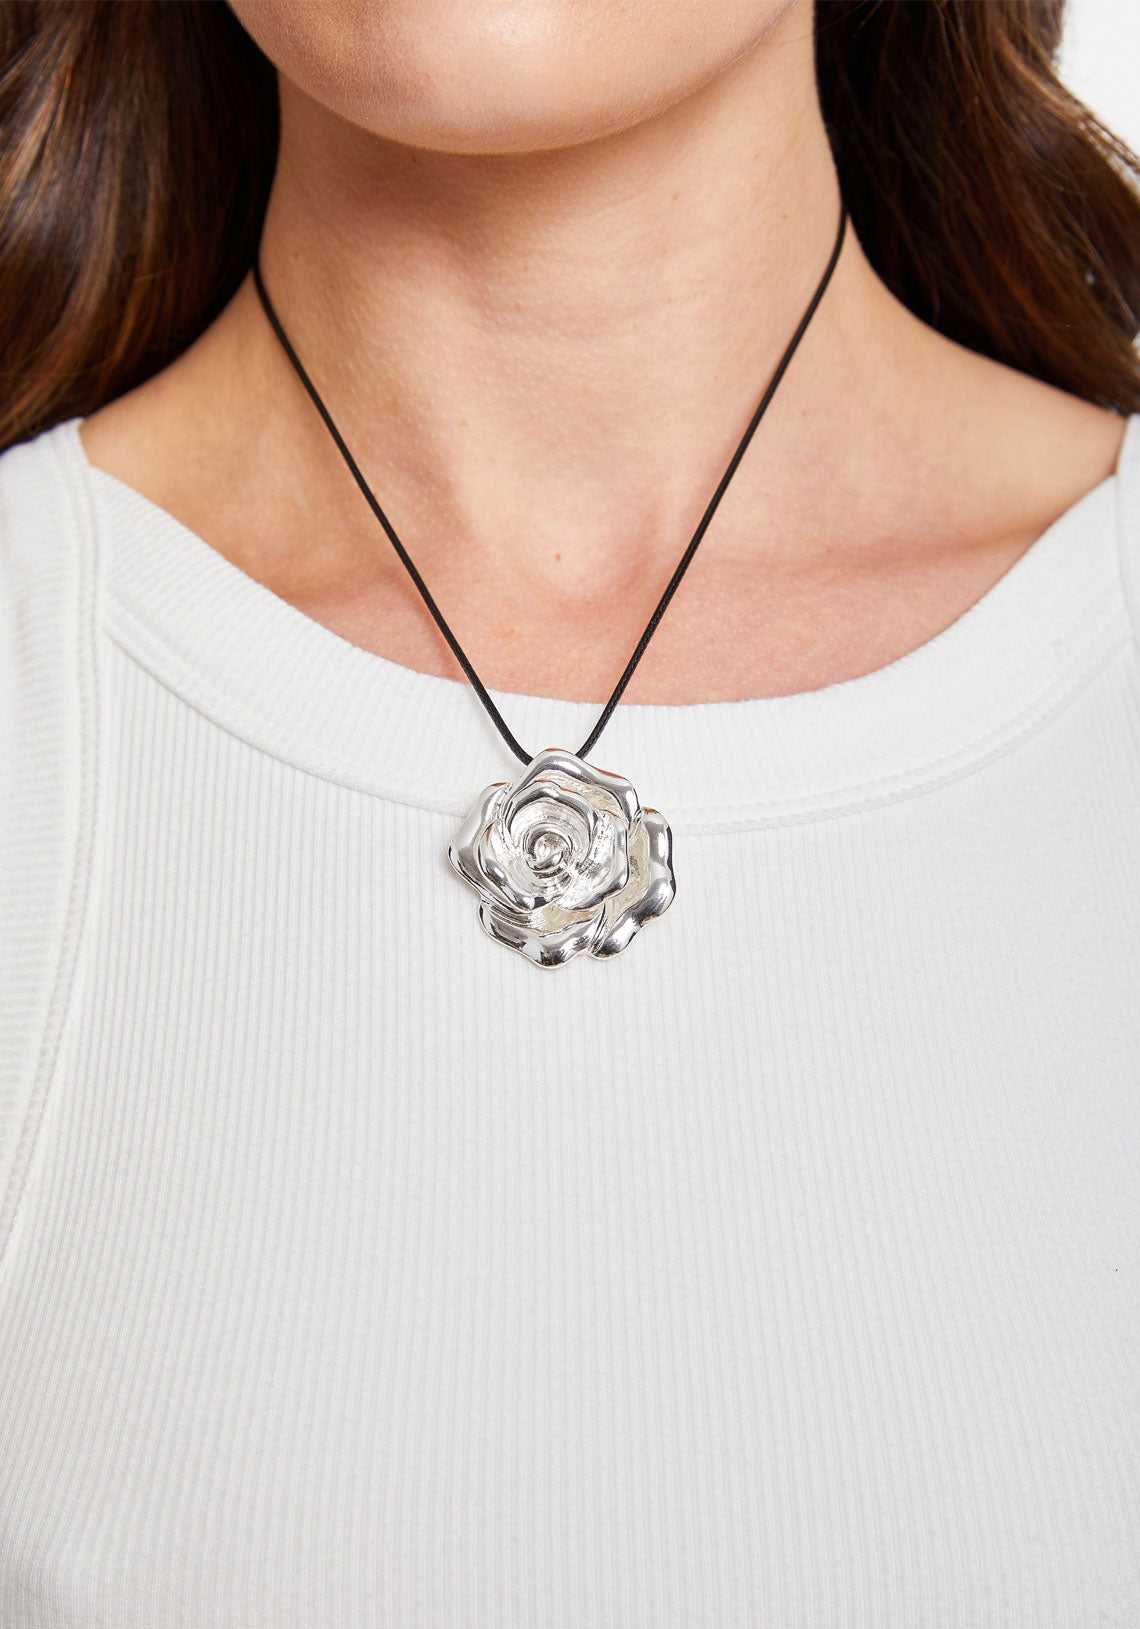 Hanging Rose Necklace w/ Rose Gold Petals - 925 Sterling Silver Flower Stem  | eBay